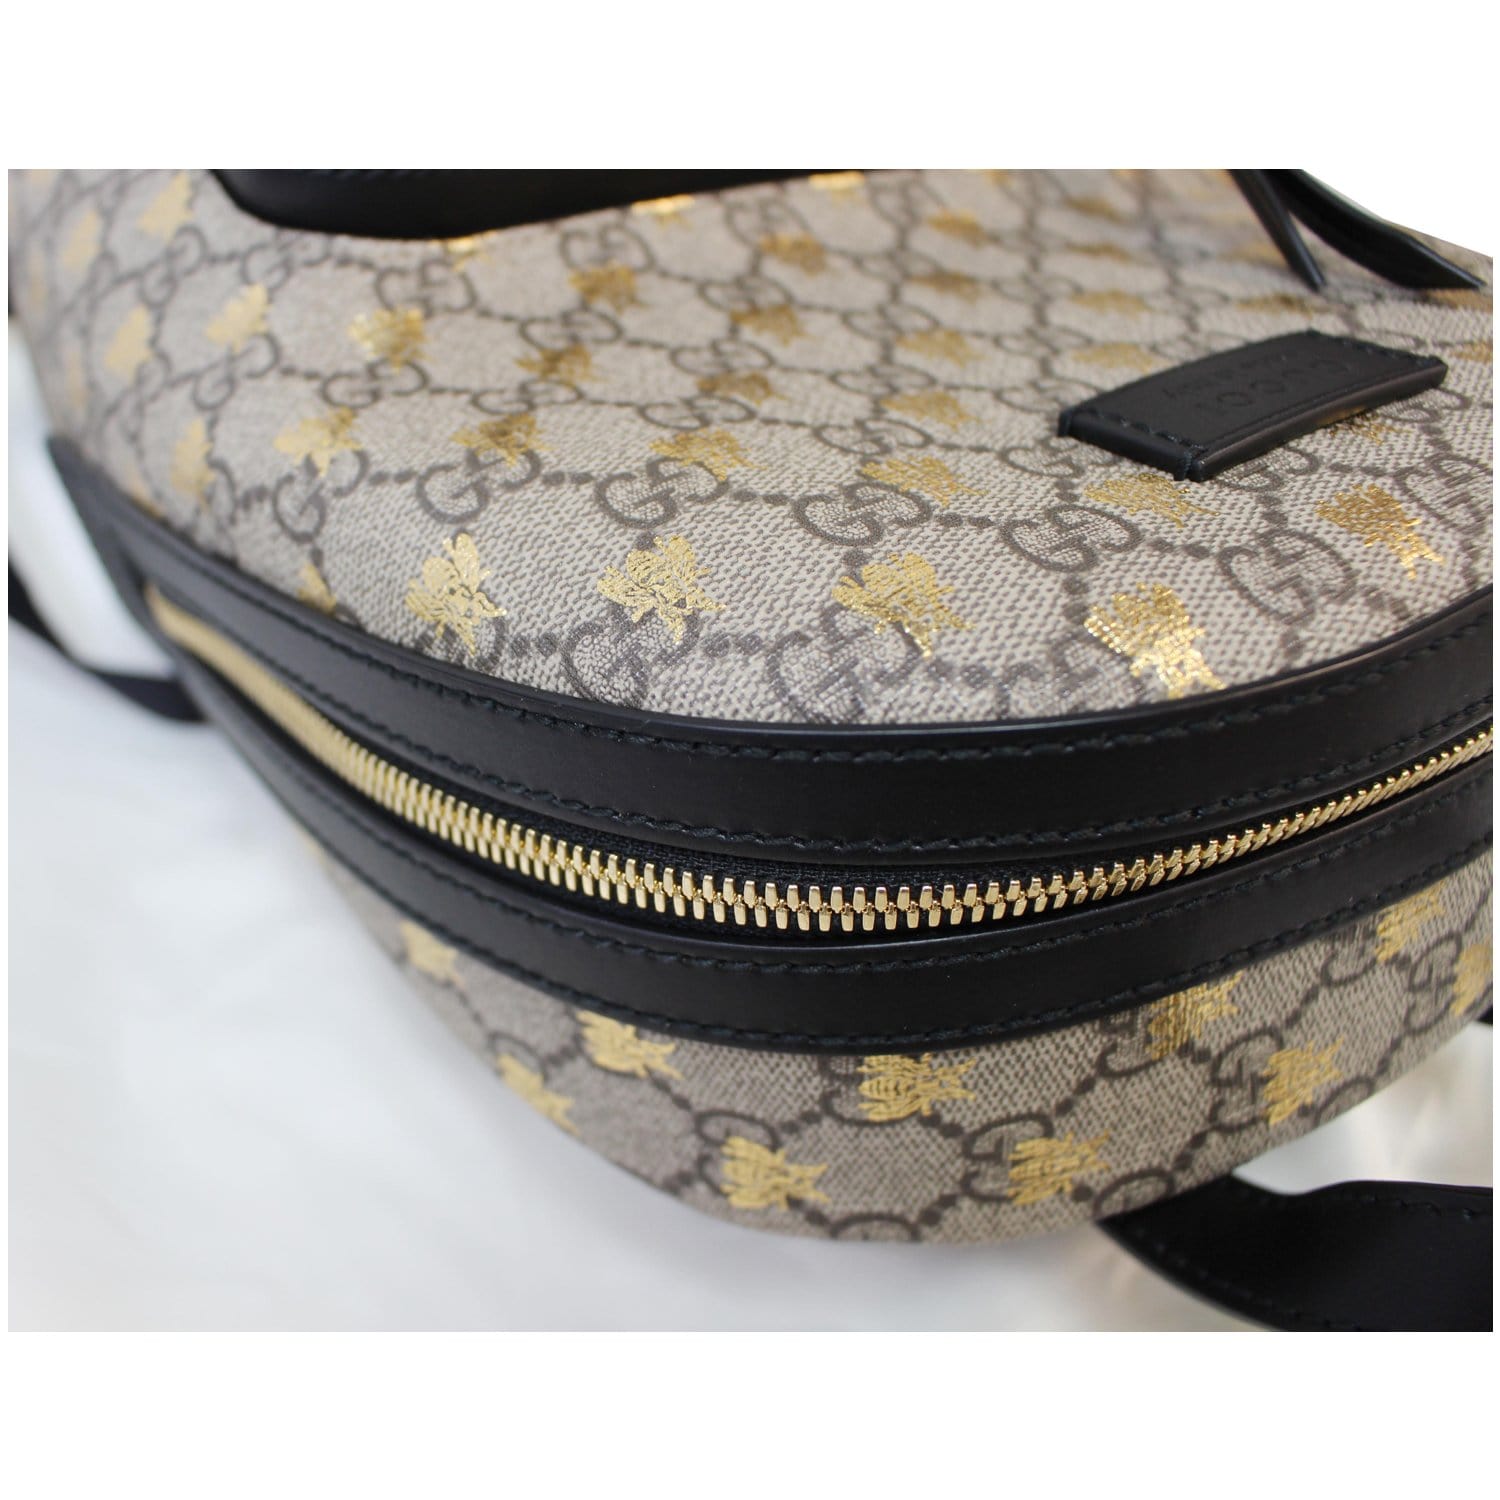 GG Supreme Bee Print Mini Backpack – Elite Dress Agency LTD